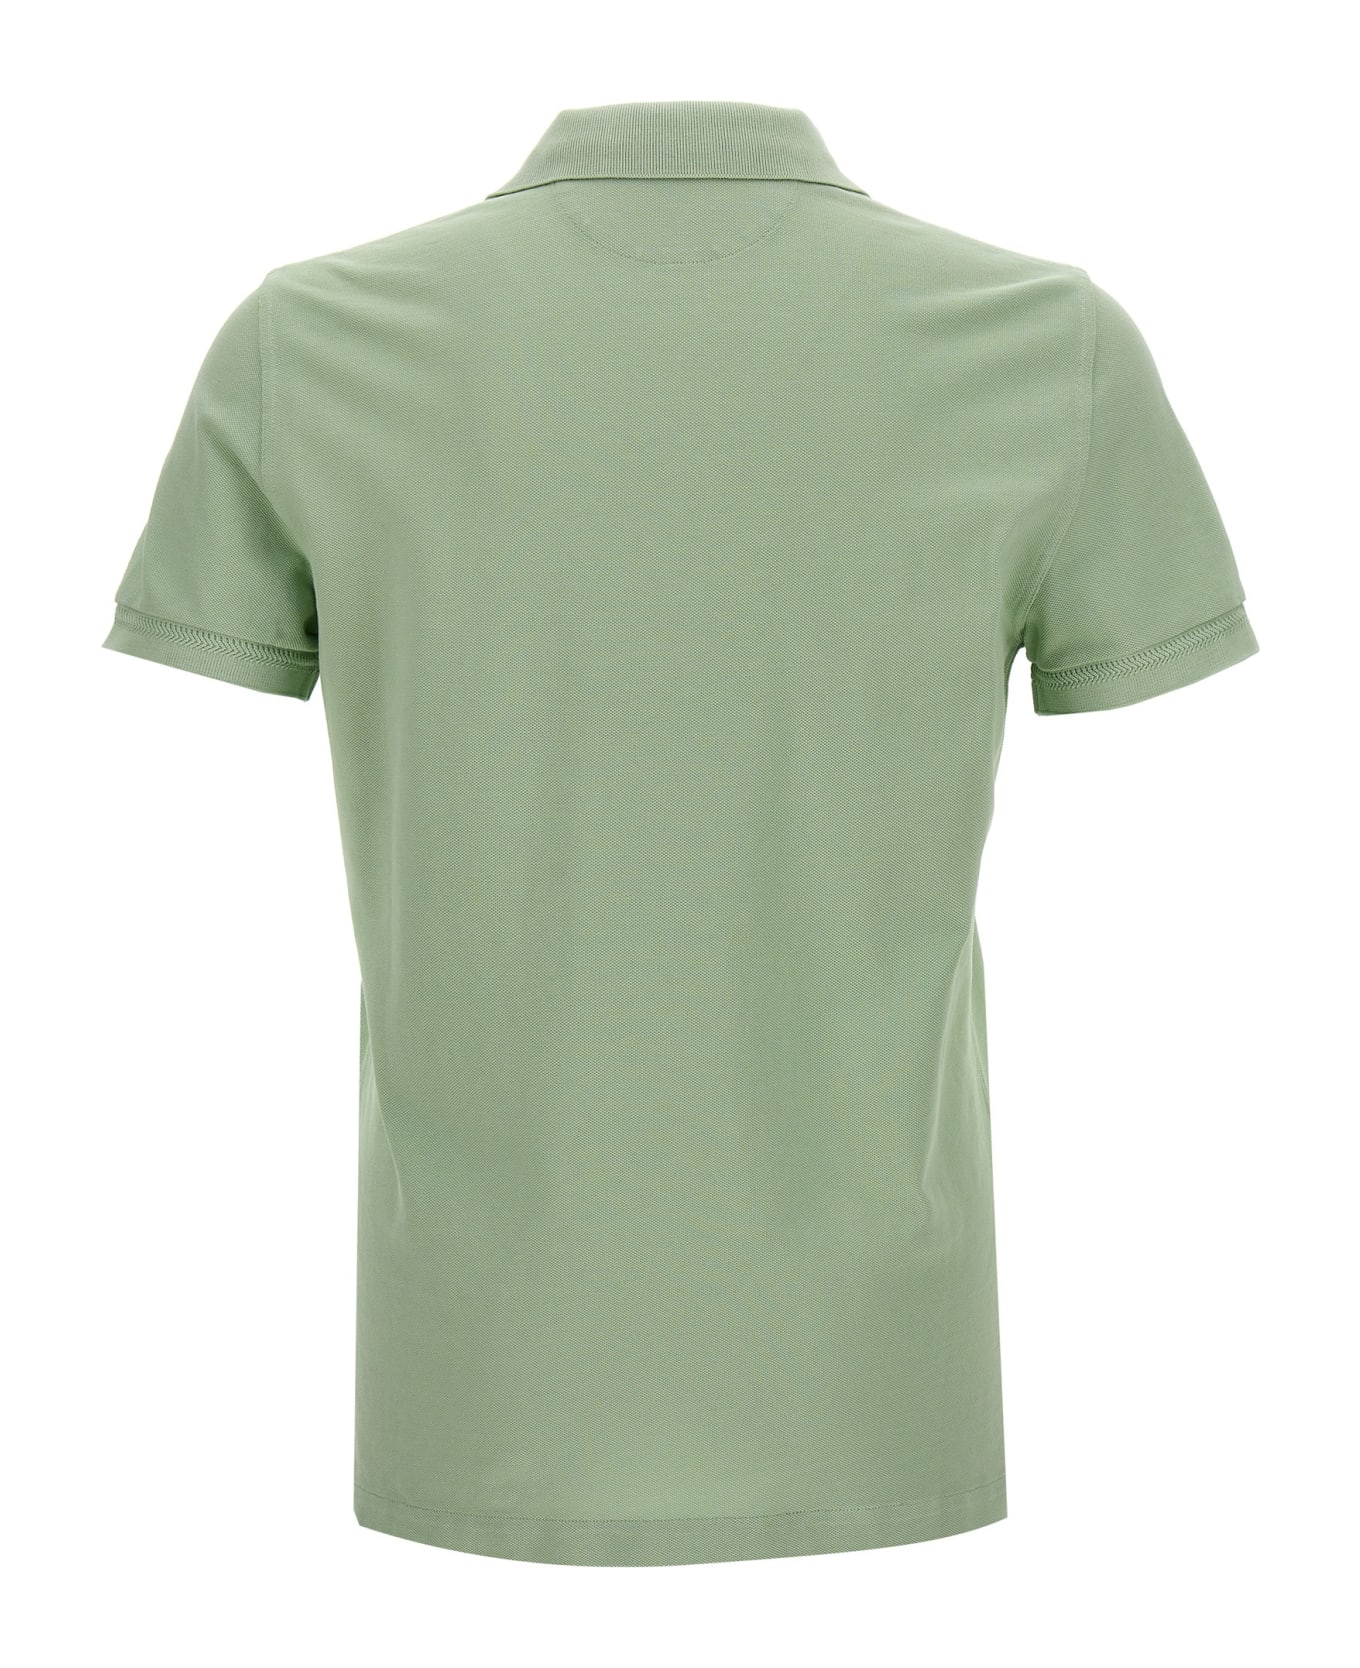 Tom Ford 'tennis Piquet' Polo Shirt - Green